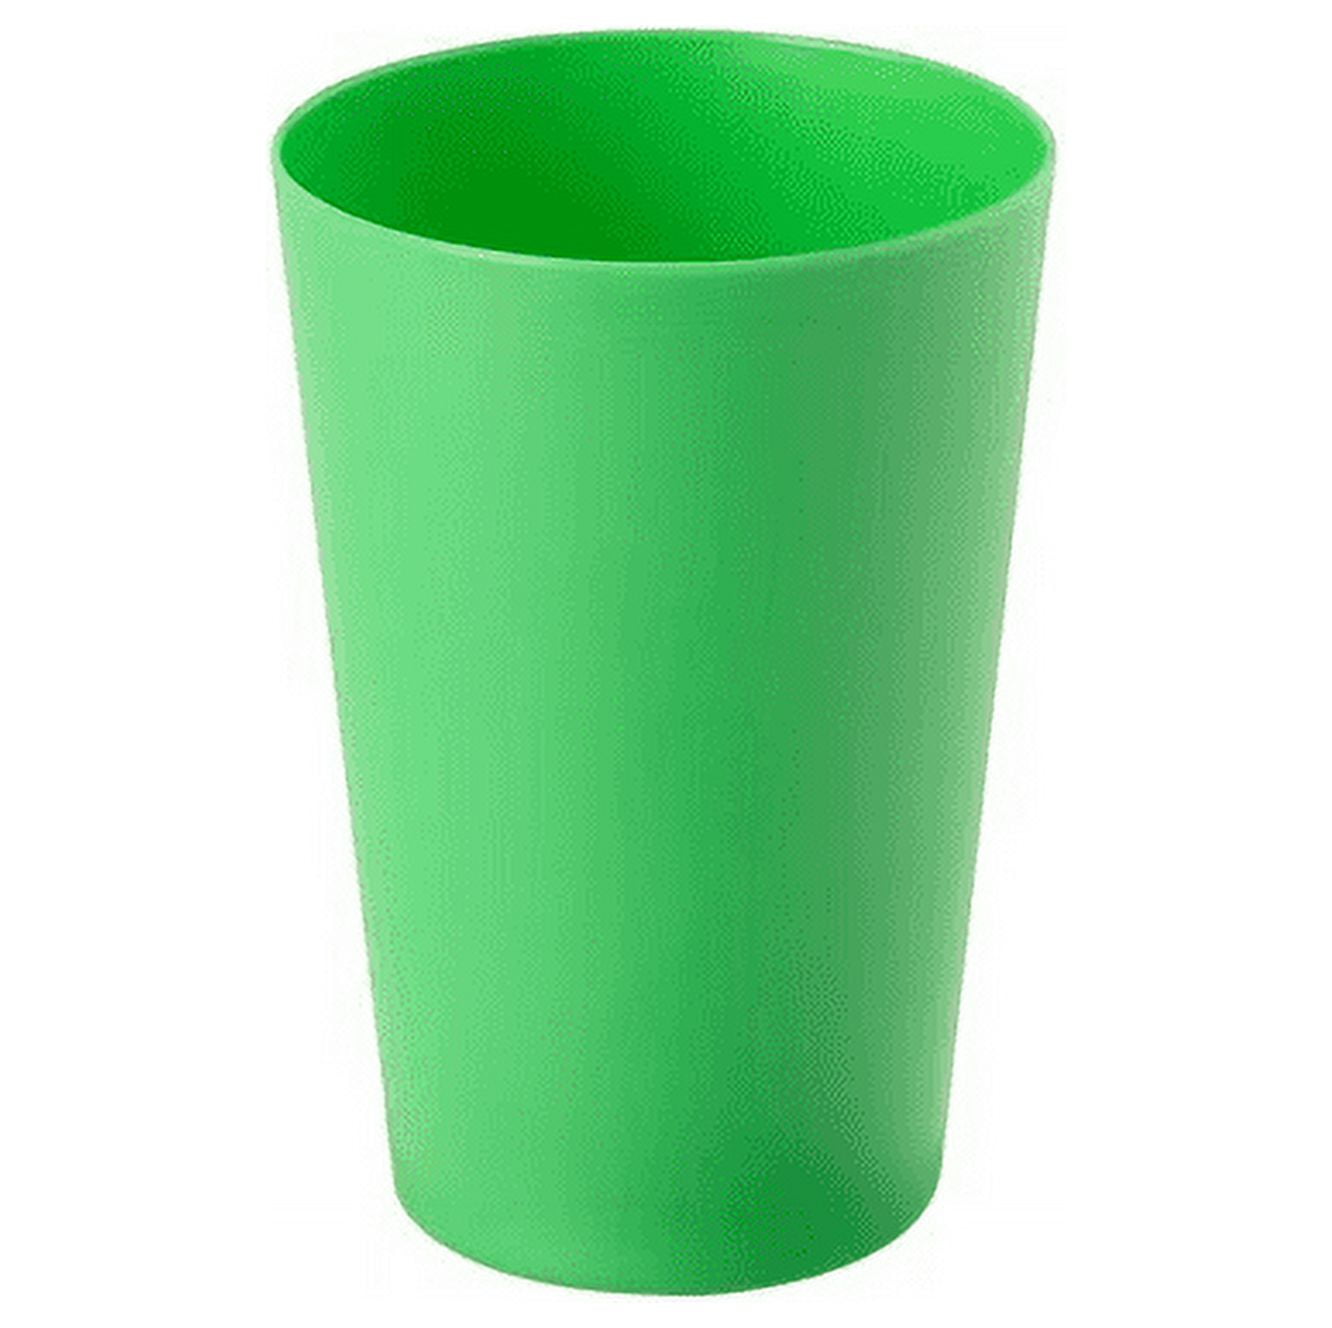 Unbreakable Plastic Cups : Target